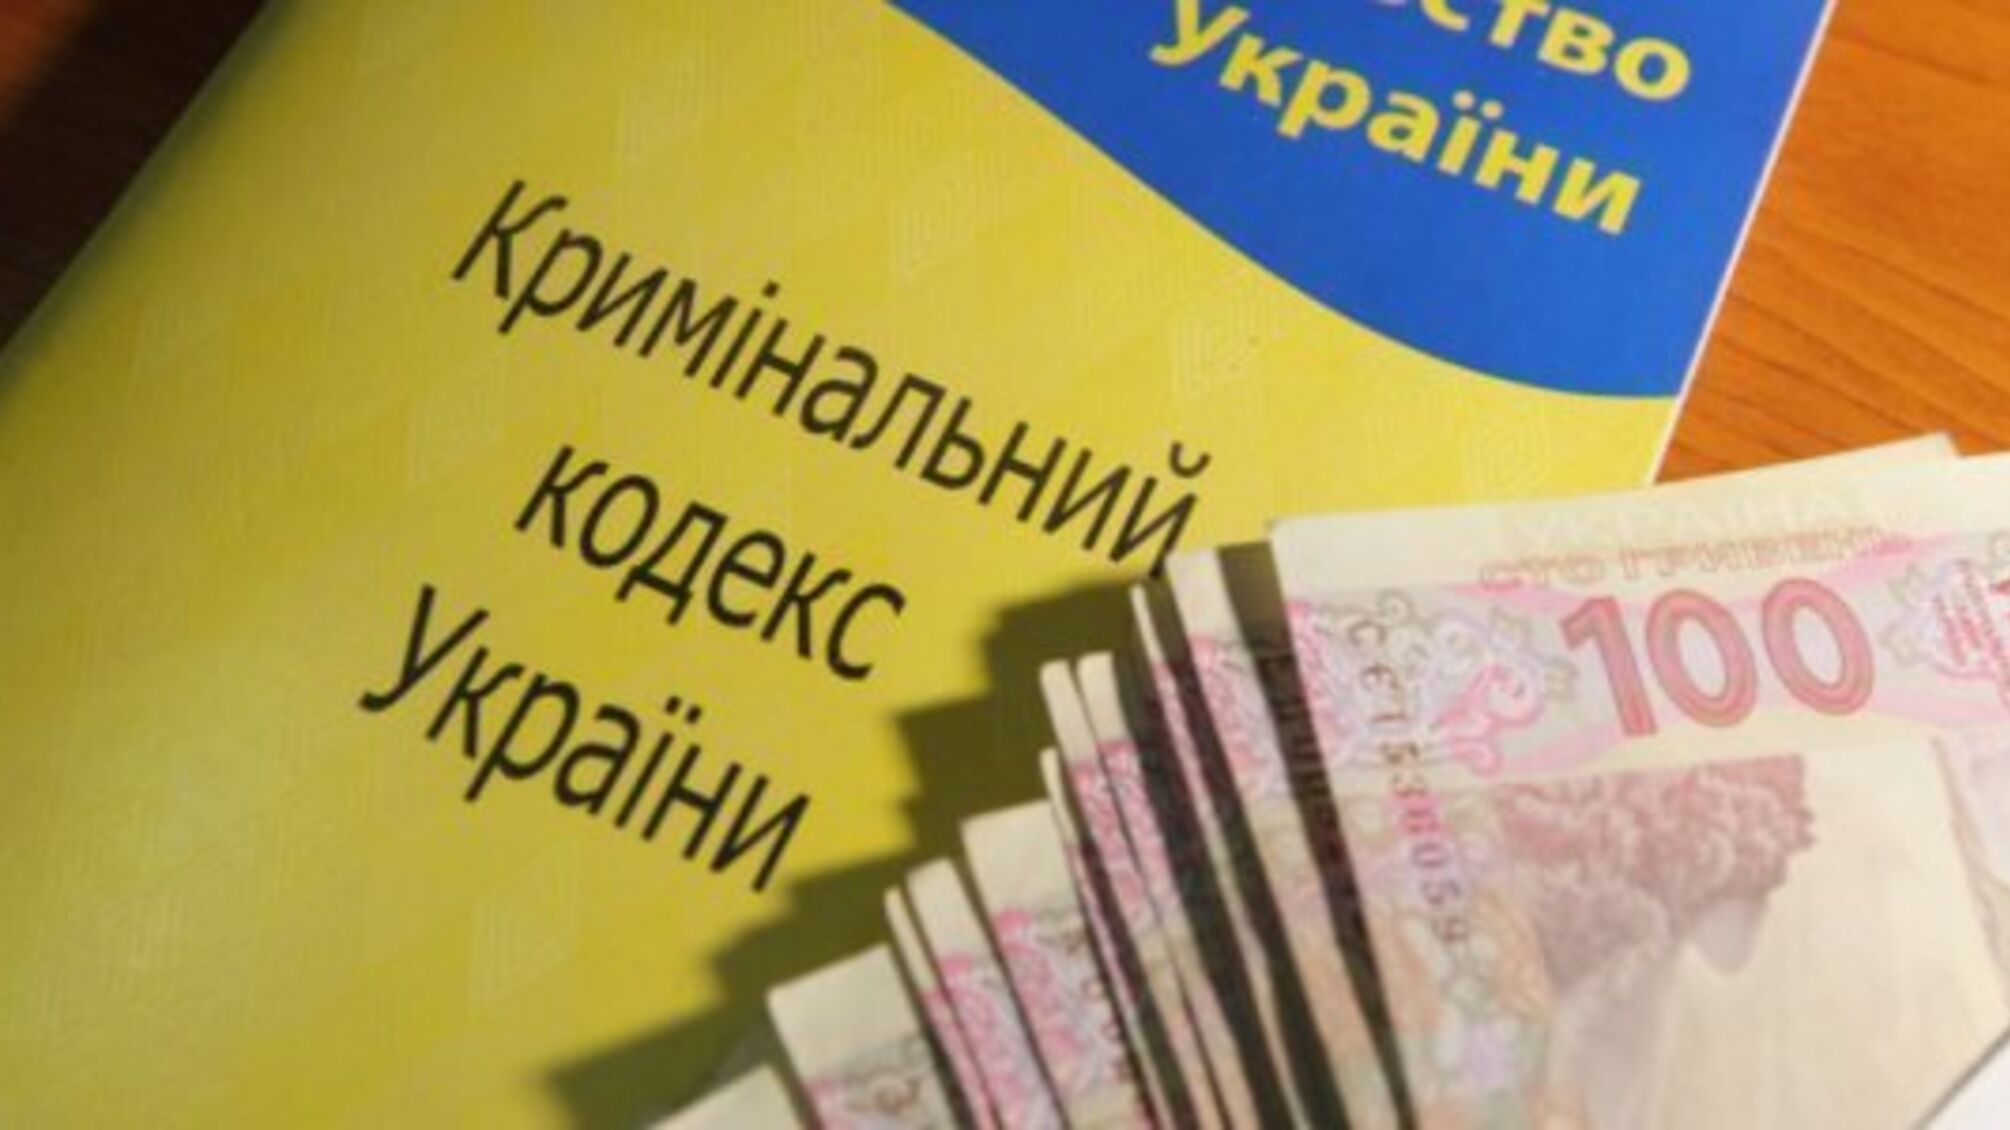 Керівництво російської корпорації привласнювало кошти з держбюджету України